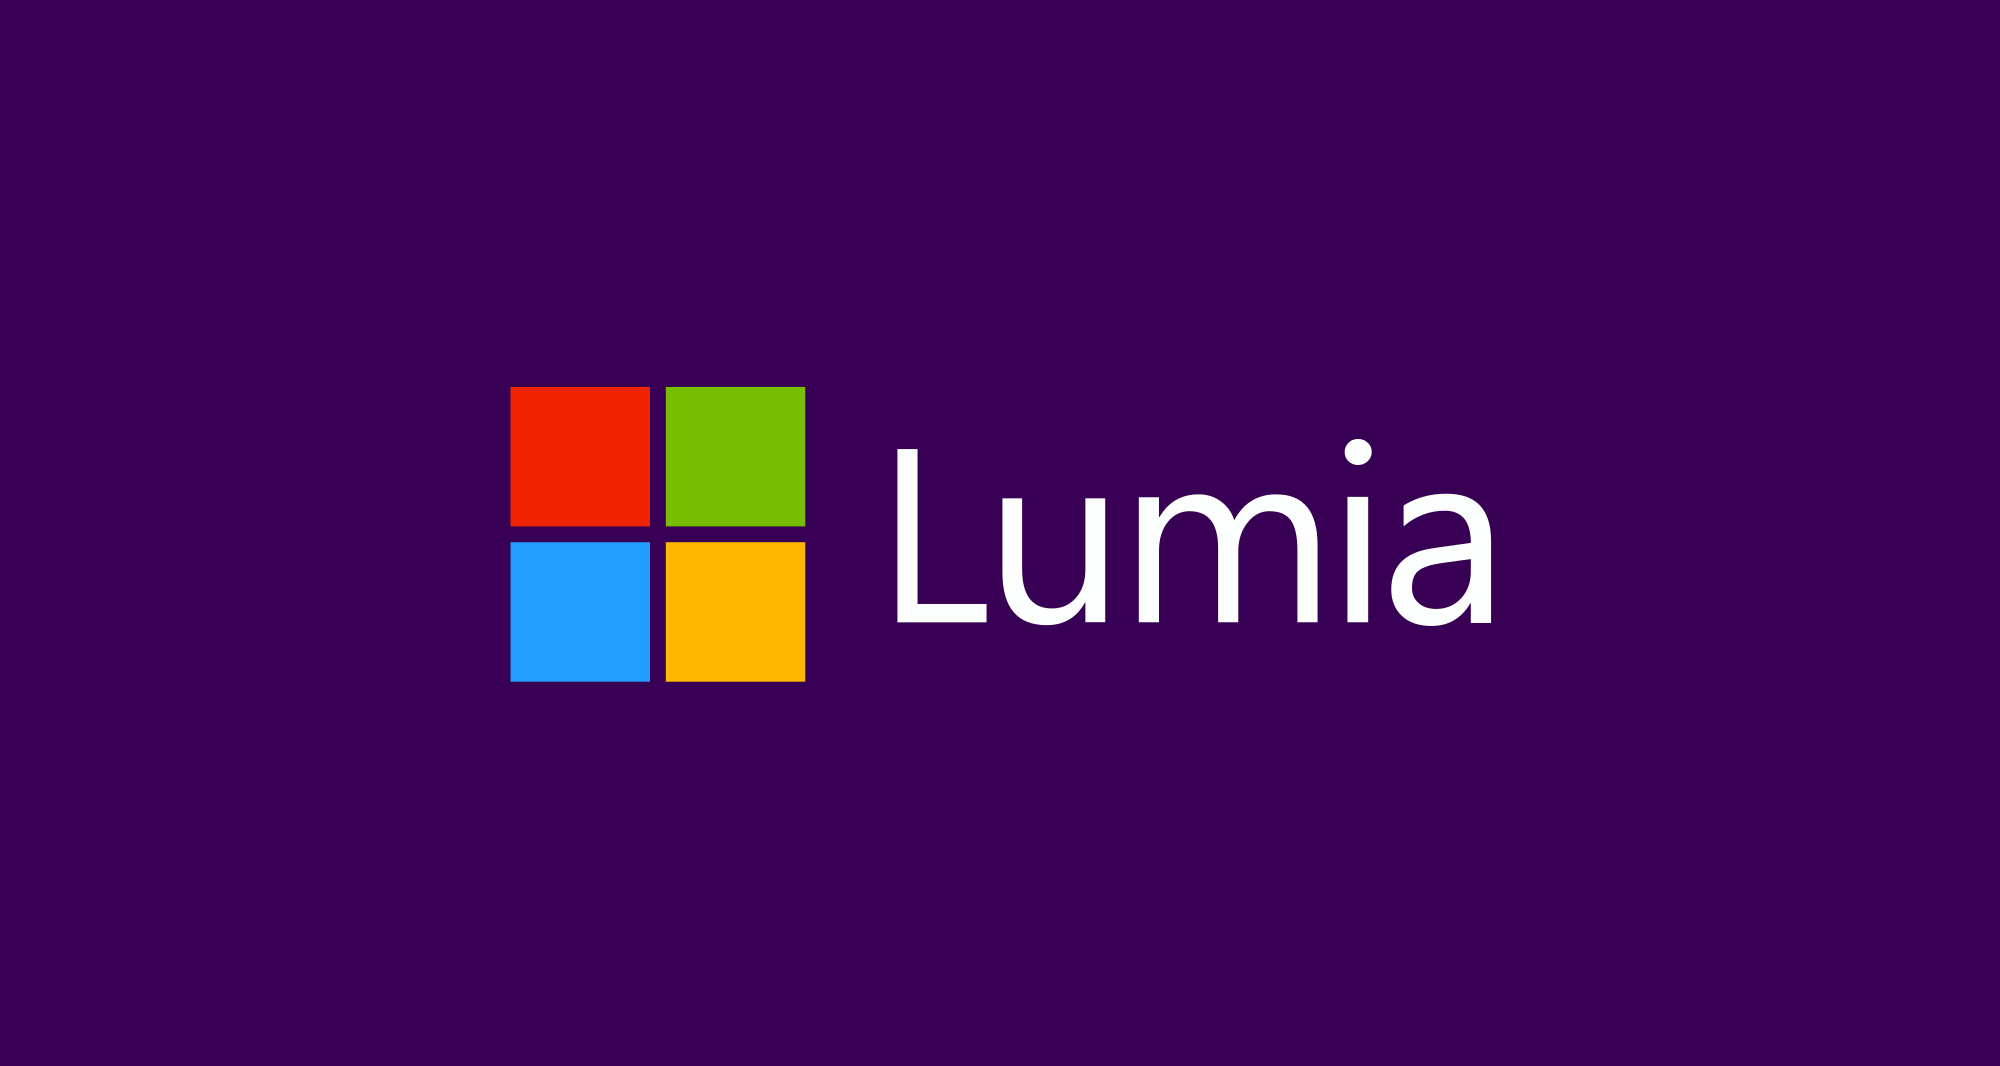 Salgstallene til Lumia fortsetter sitt drastiske fall.